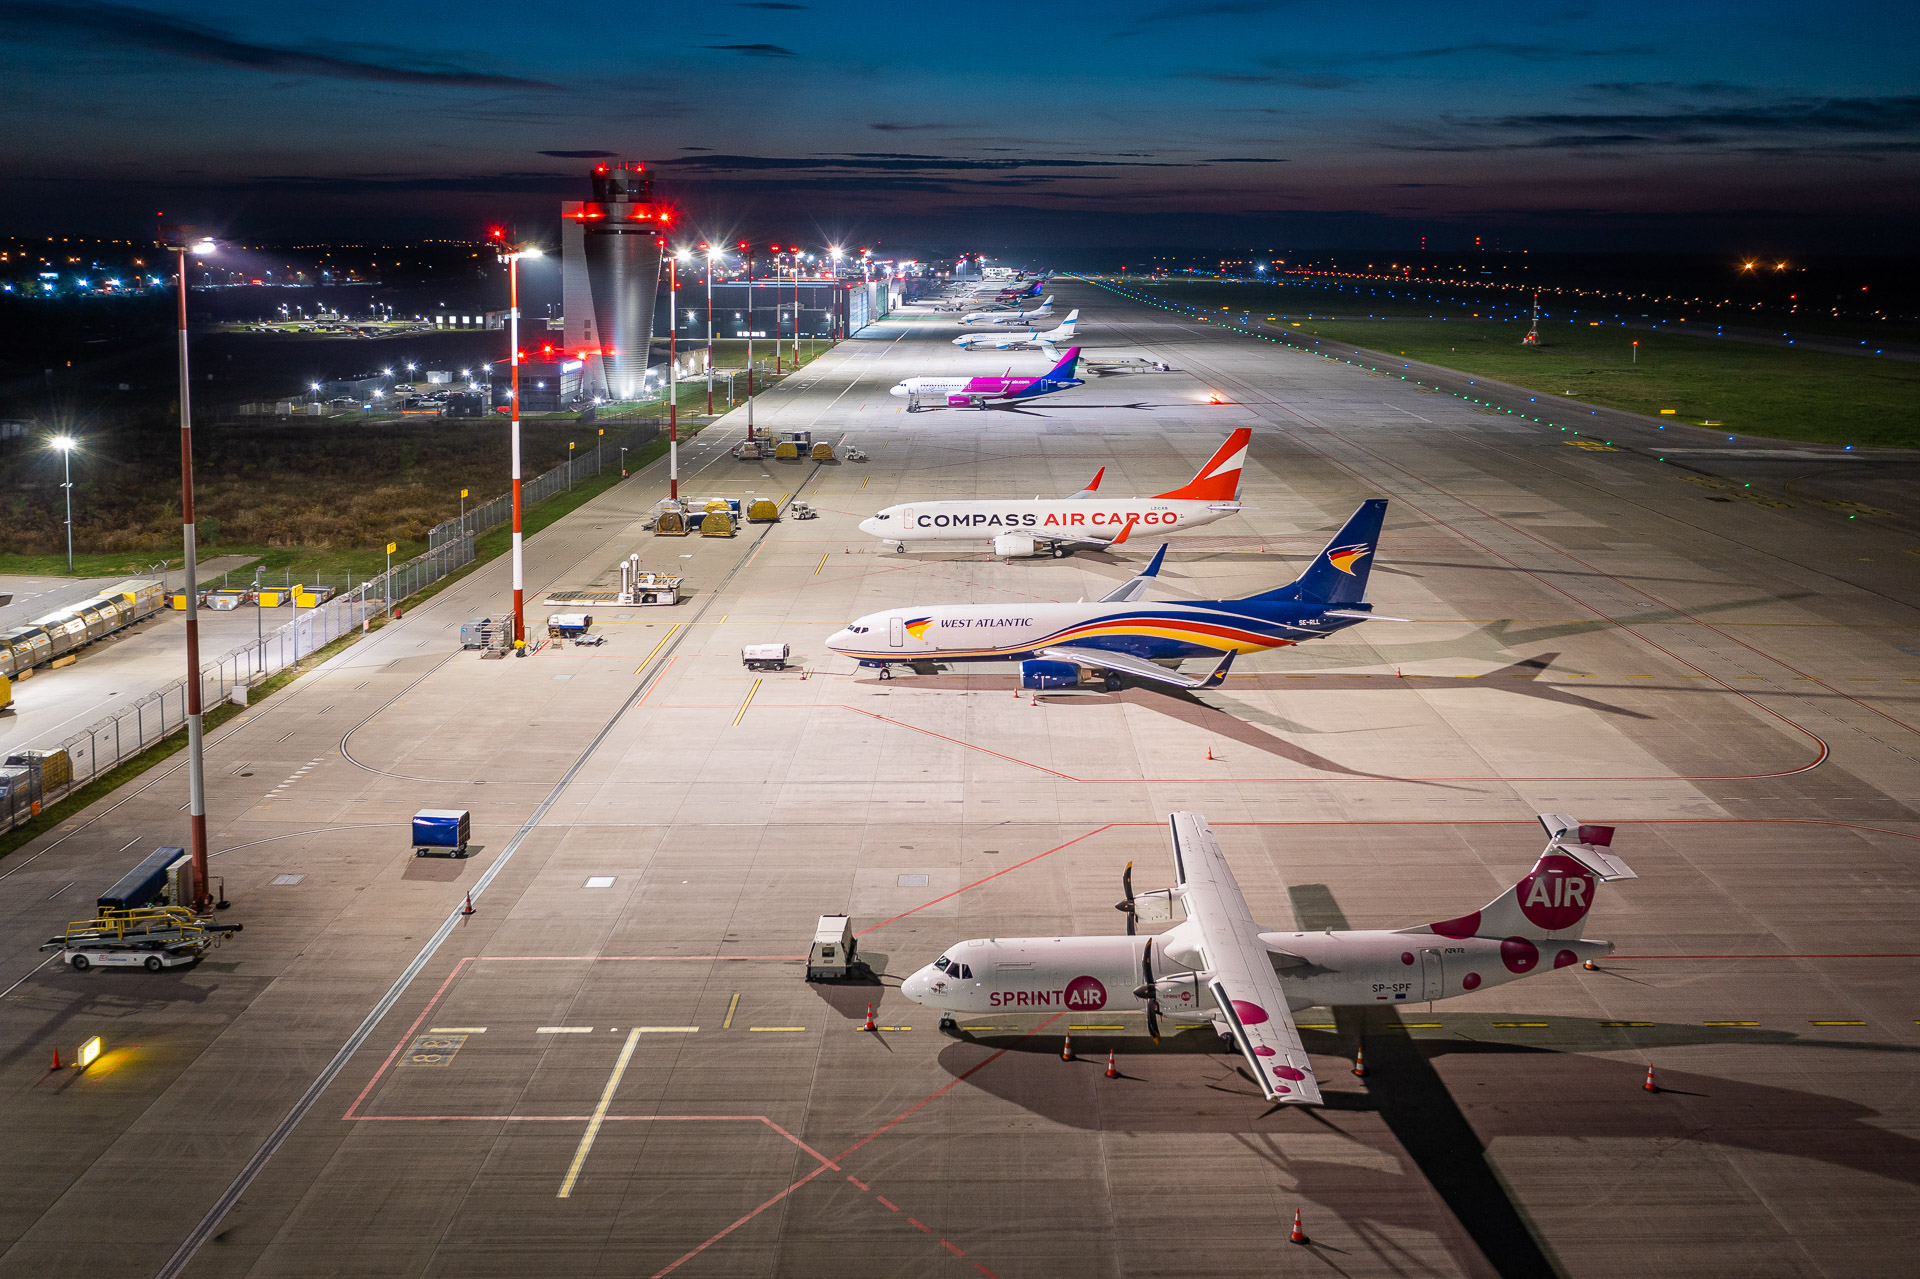 Katowice flygplats når rekord i november med över 300,000 XNUMX passagerare